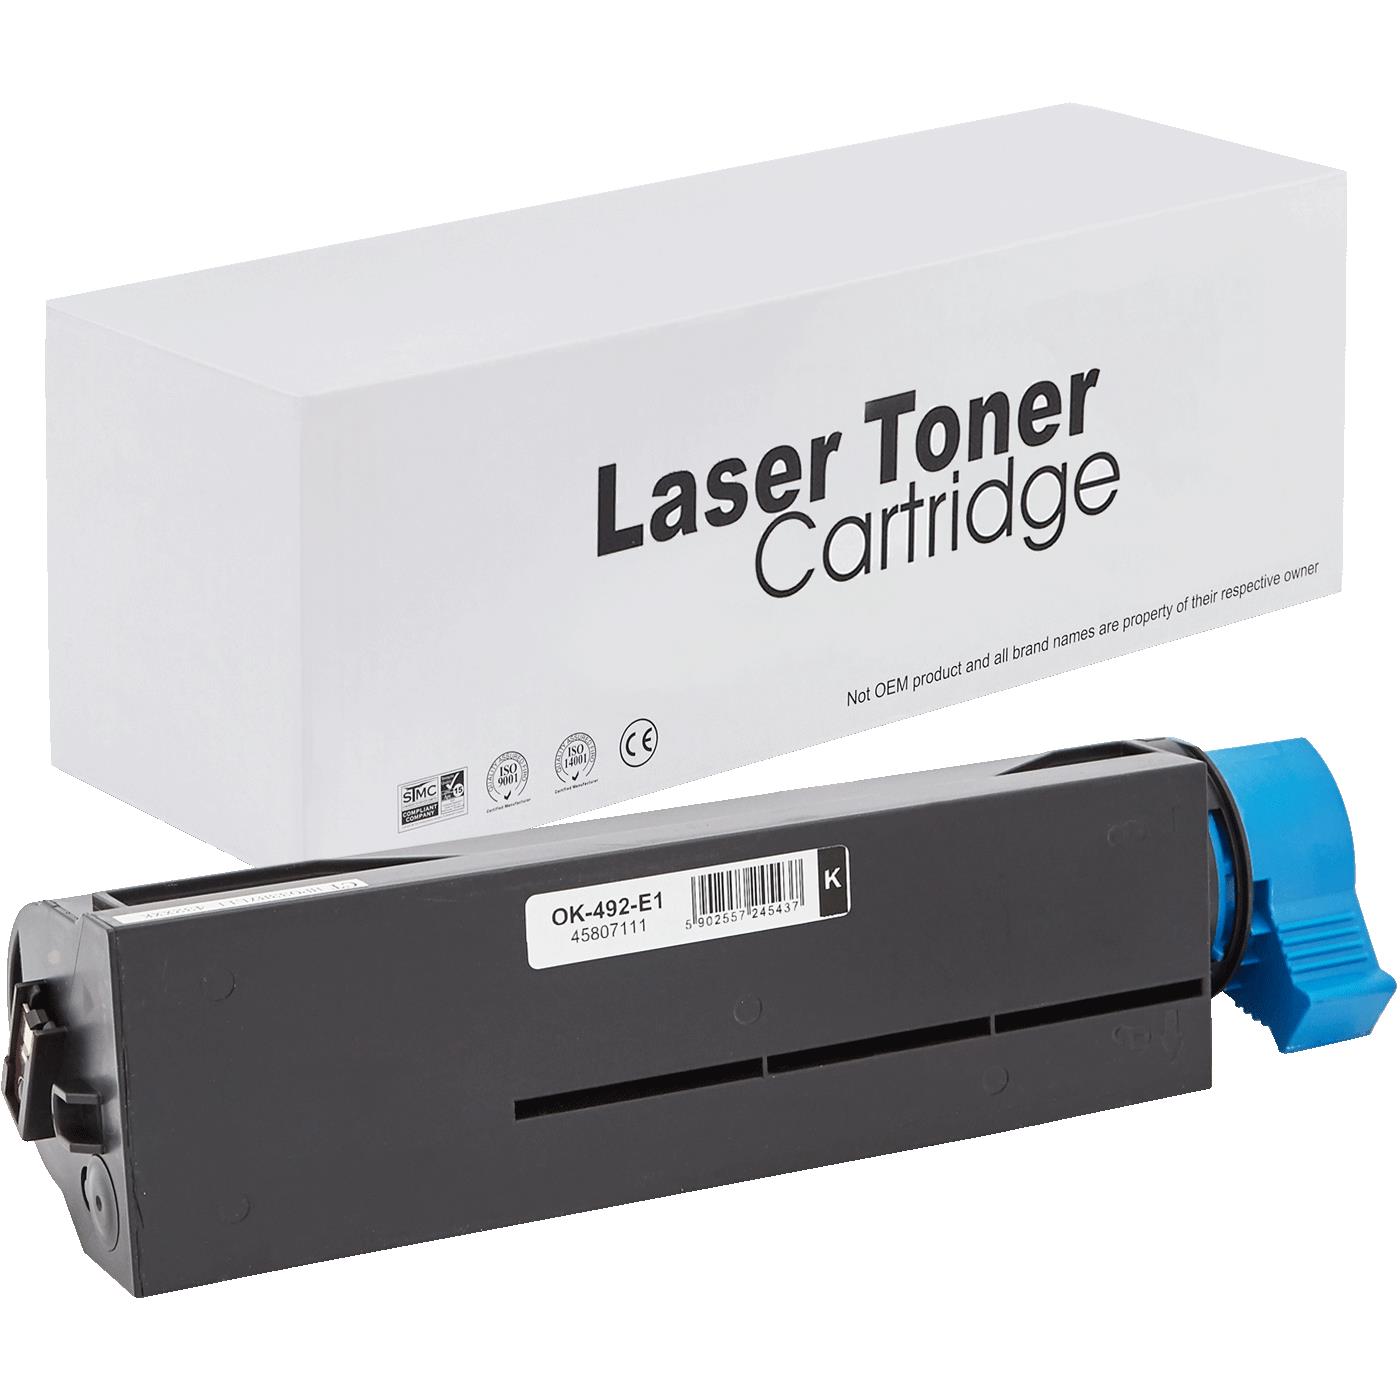 съвместима тонер касета за принтери и печатащи устройства на Oki MB562dnw Toner OK-492 | 45807111. Ниски цени, прецизно изпълнение, високо качество.